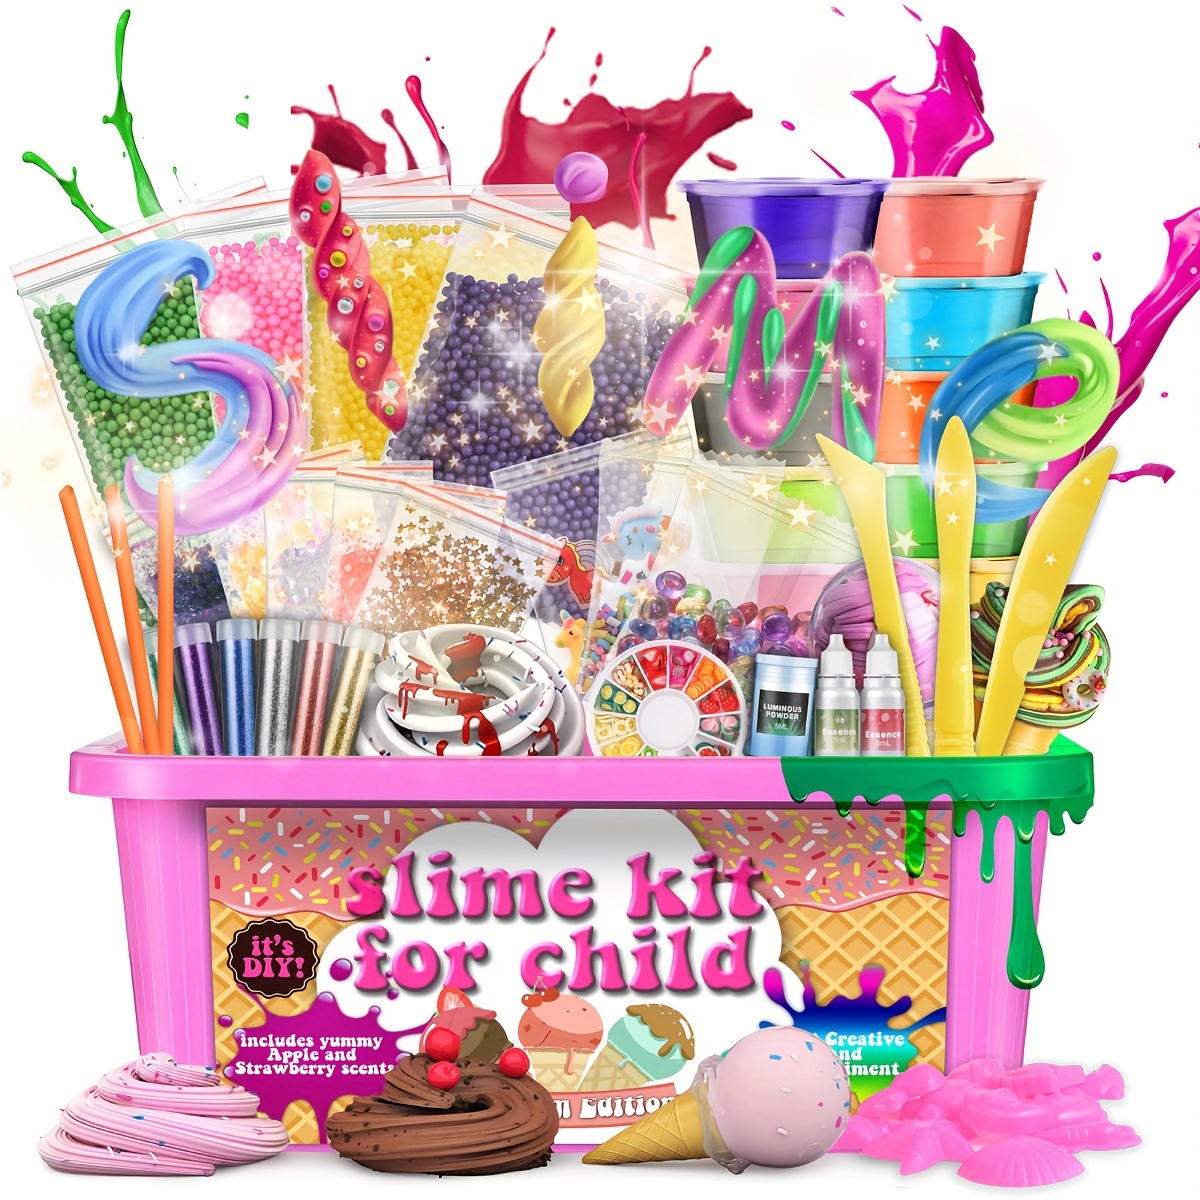 Slime – poudre de boue visqueuse en boîte, jouets éducatifs pour enfants,  Plasticine, couleurs aléatoires